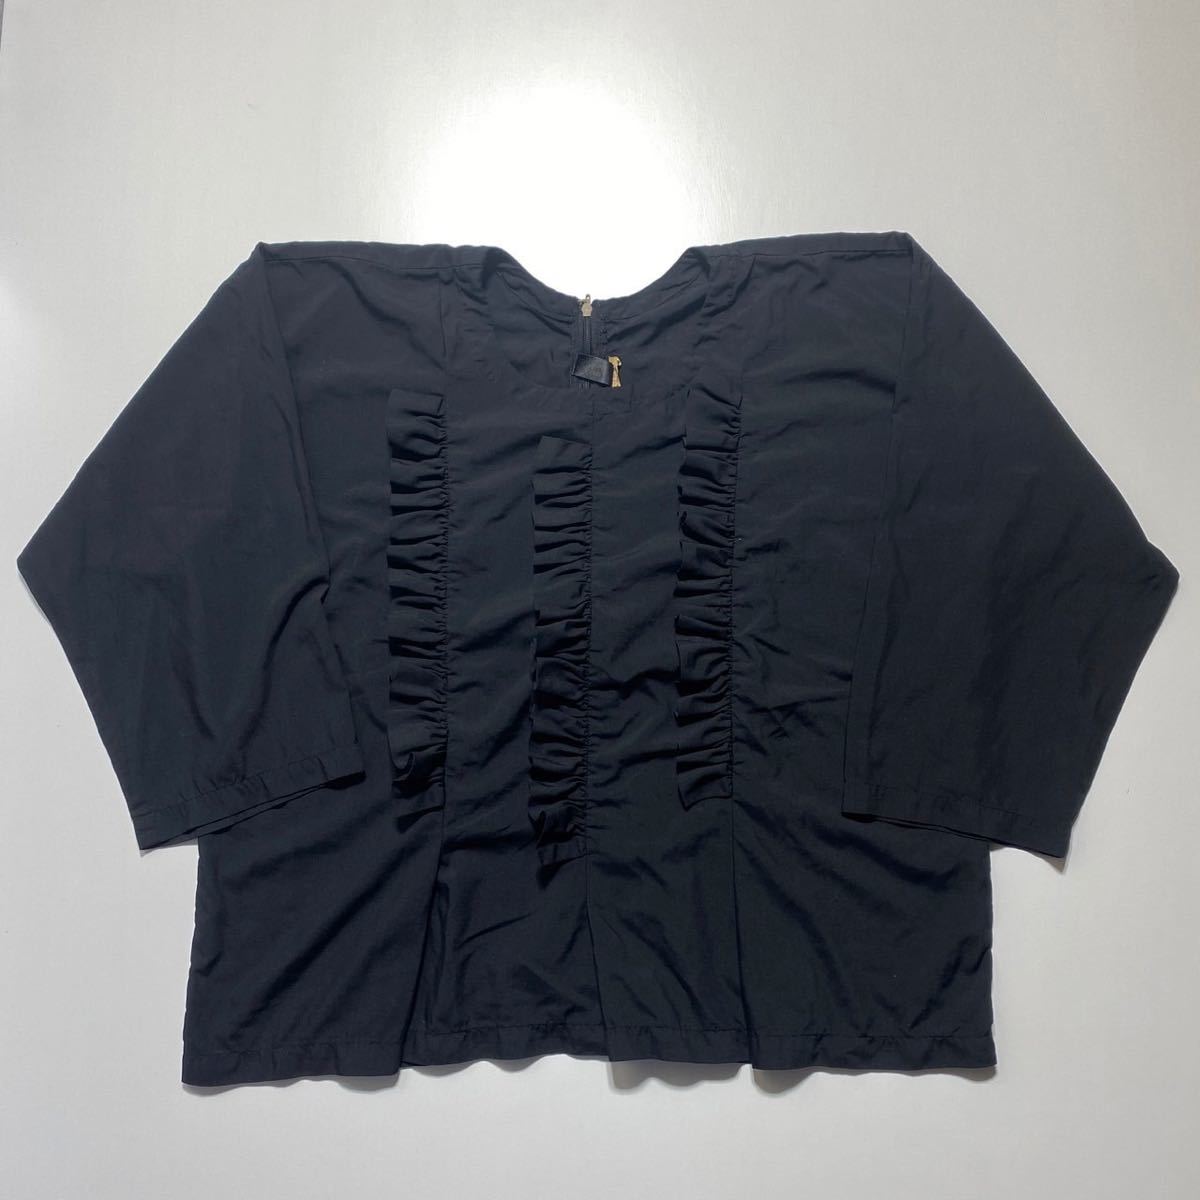 [M] Комп -де -Гароны Грифс Рубашка черная ком ком -дегарсонная рубашка черная круглая рубашка для рубашки G1712